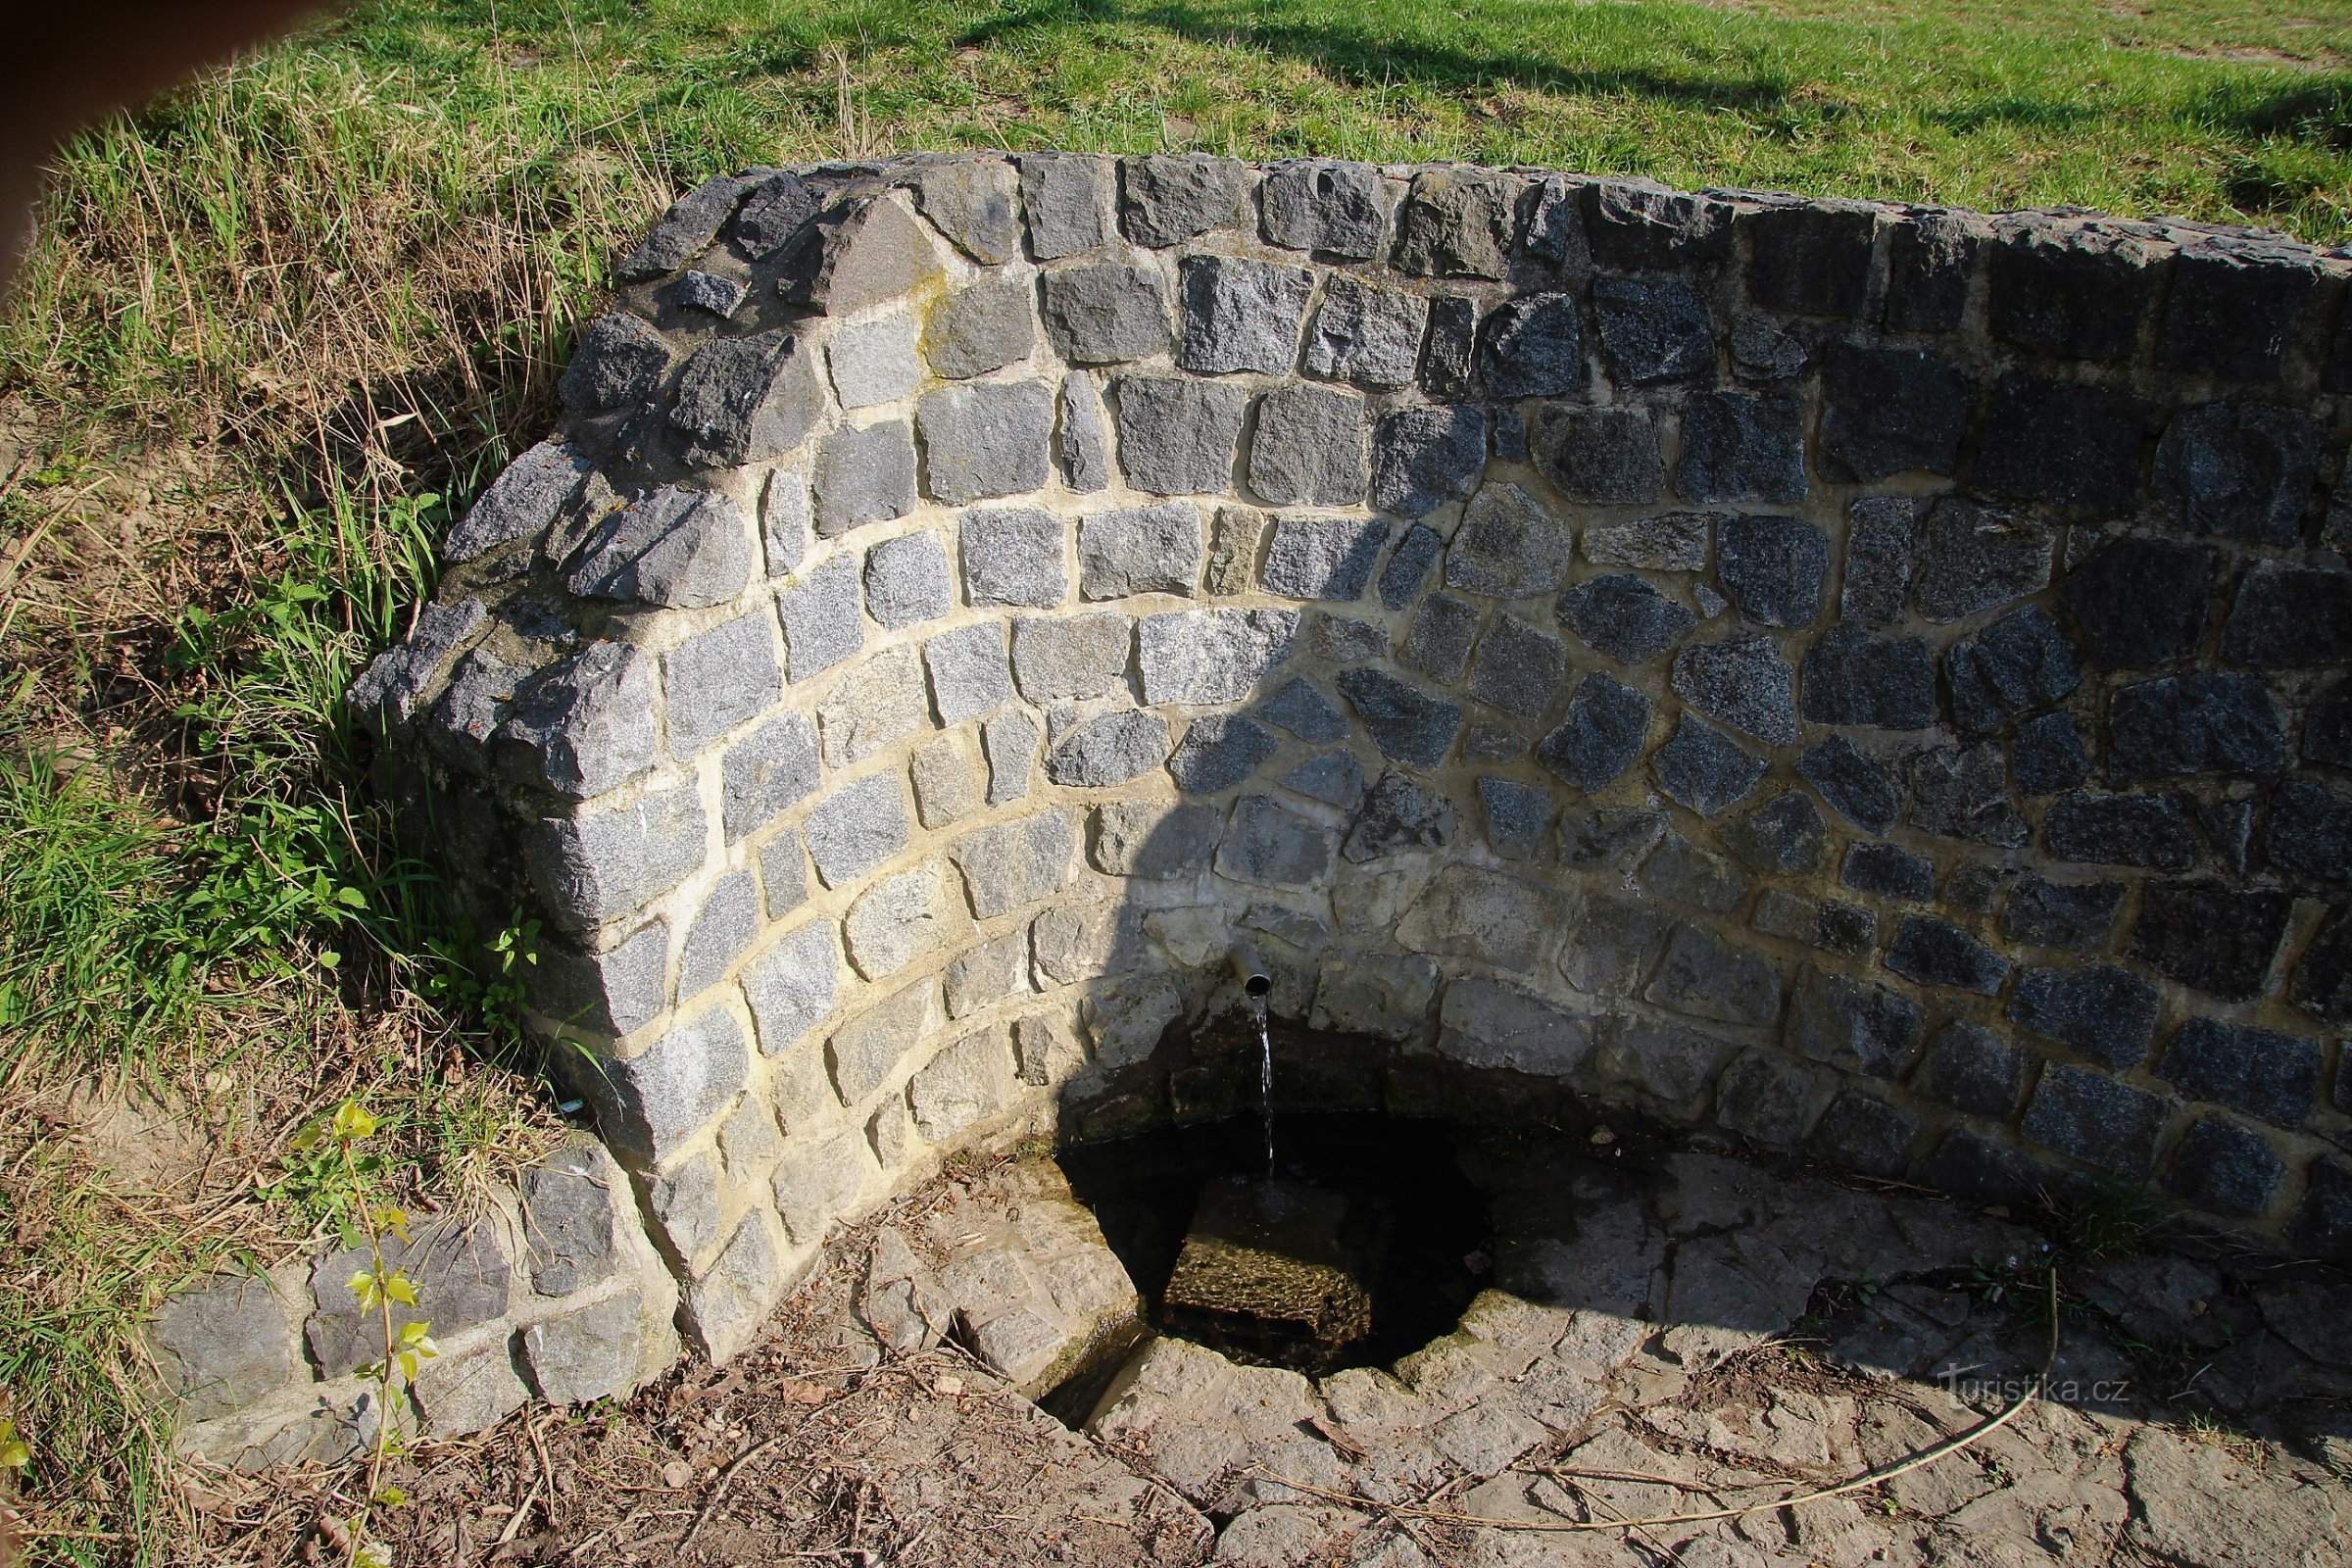 Čelo vodnjaka je zgrajeno iz obdelanega lomljenega kamna